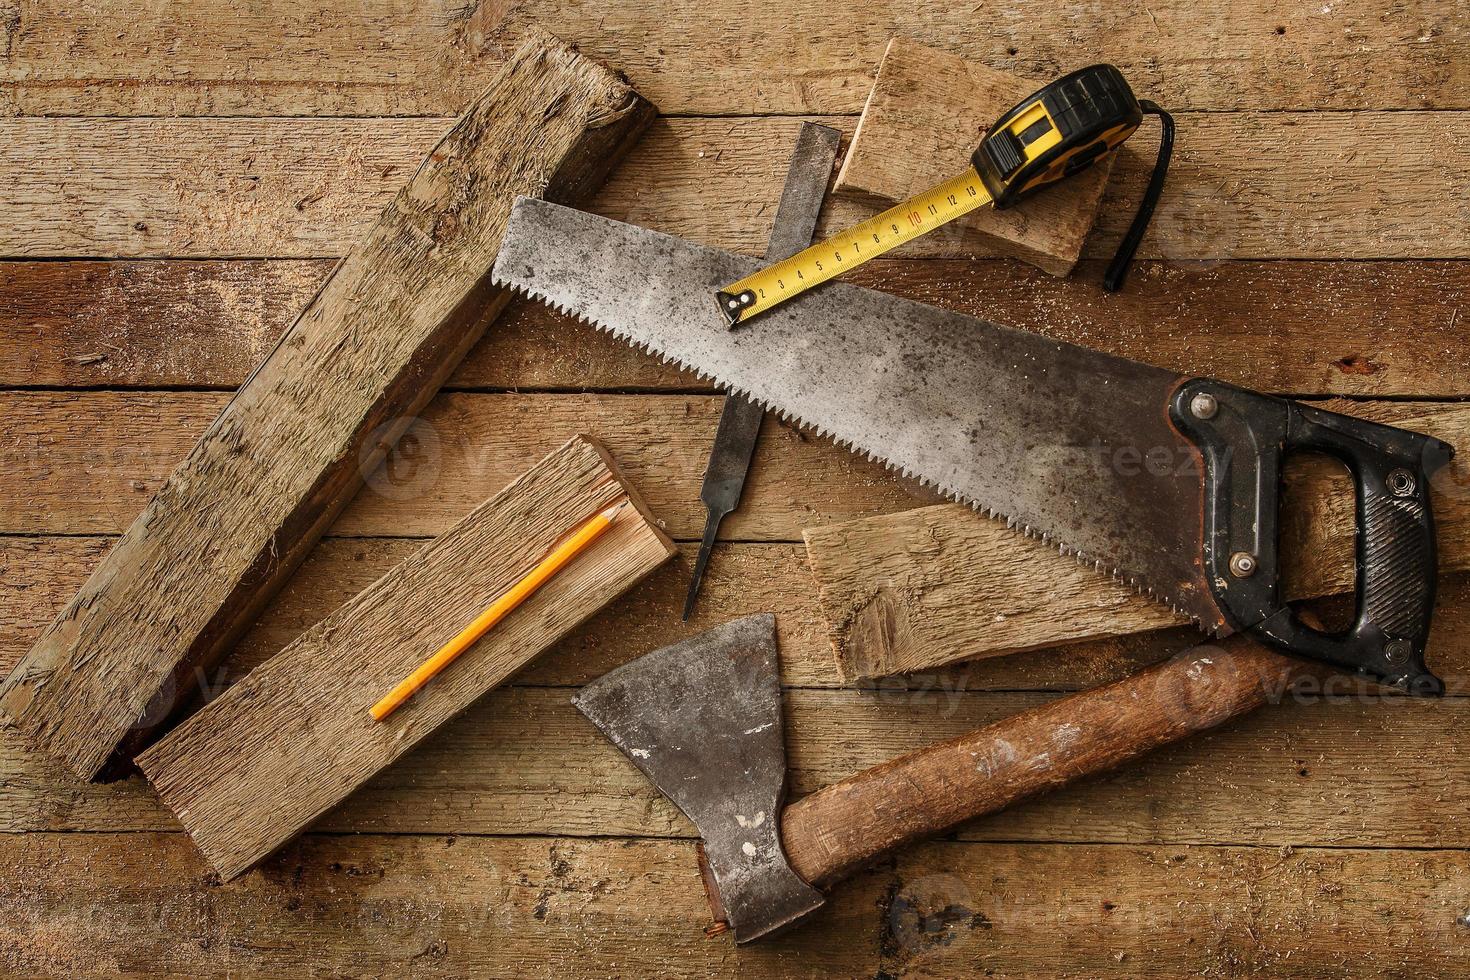 herramientas de carpintería en superficie de madera foto